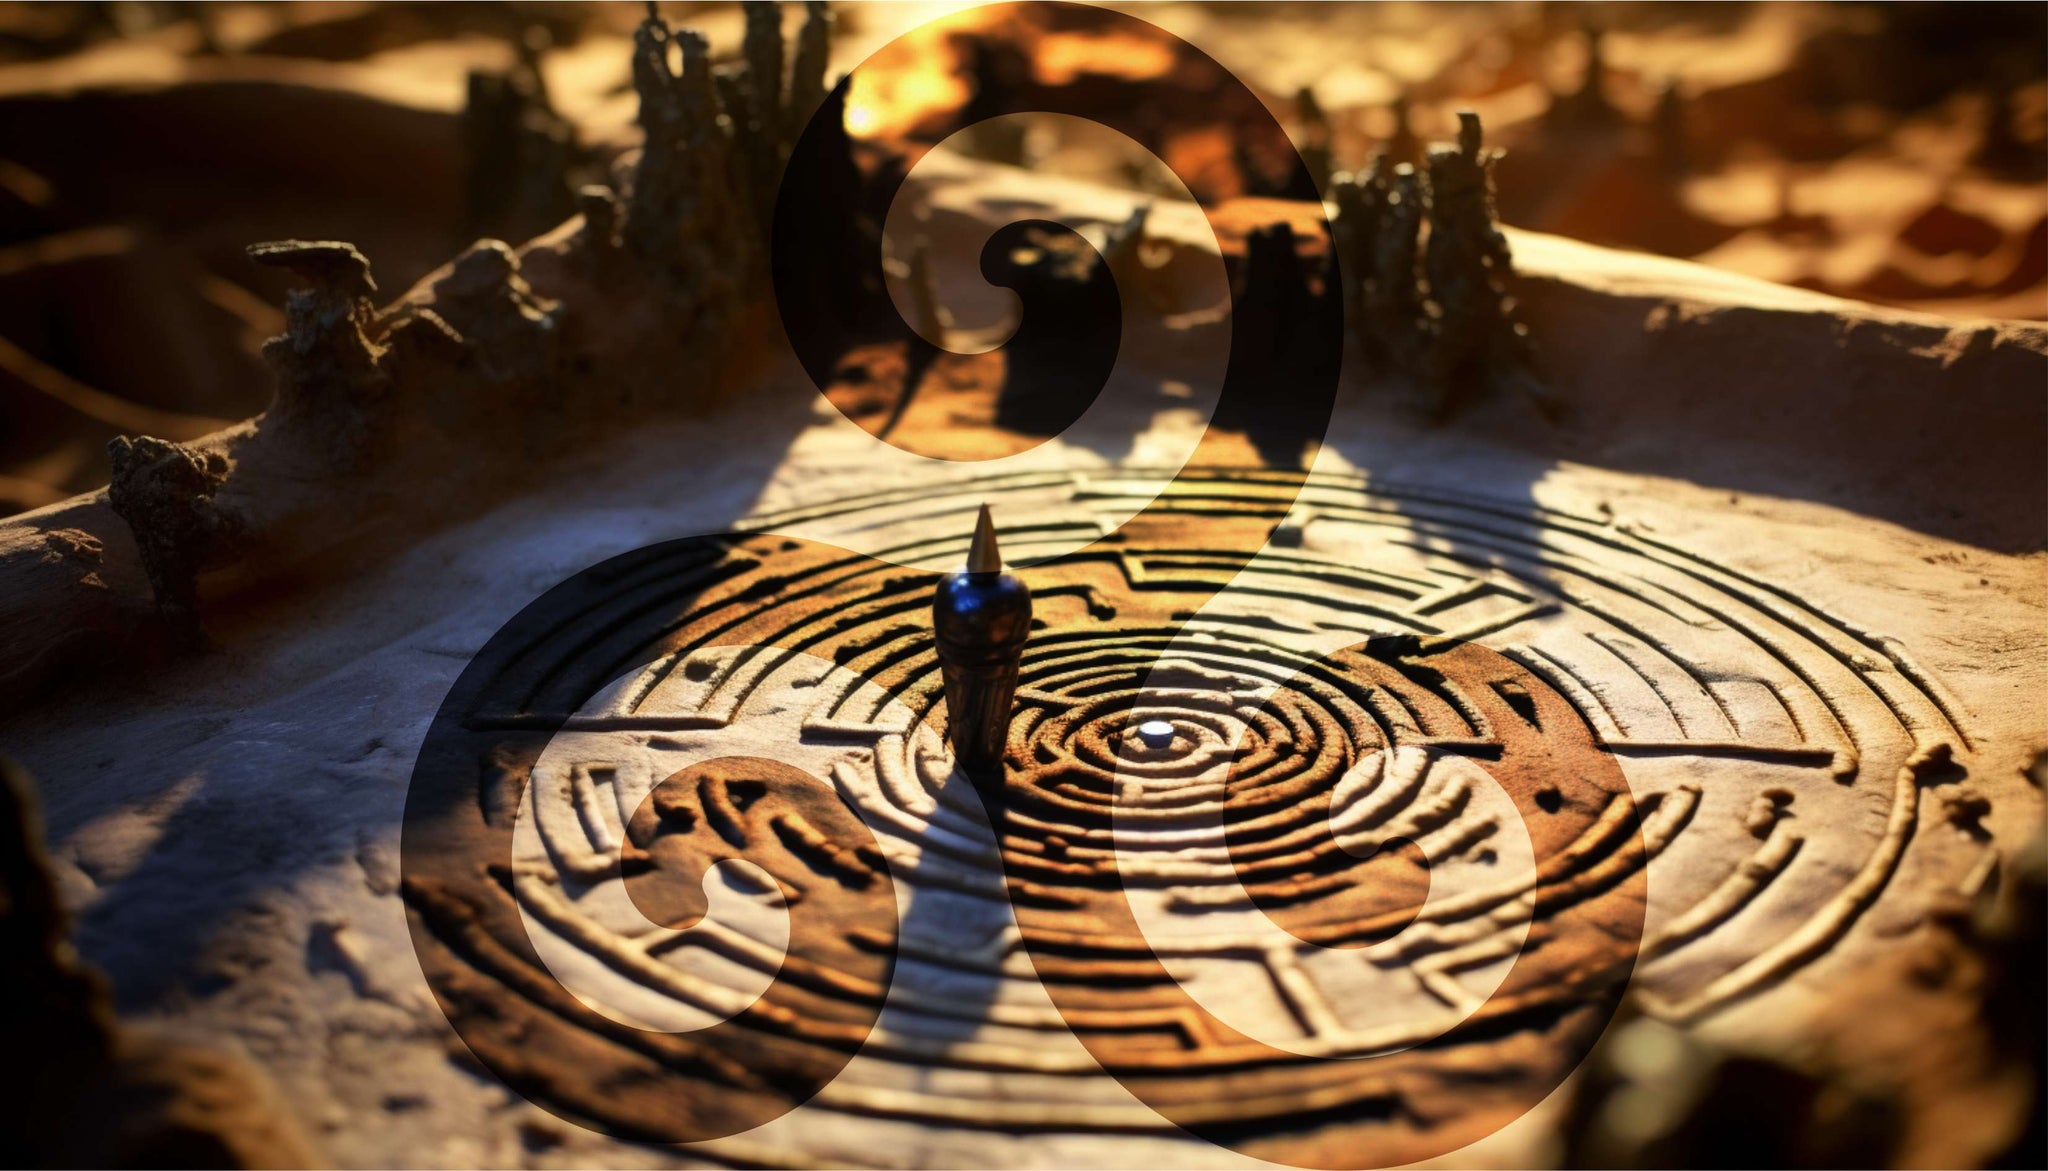 le labyrinthe celte de l'exustance avec incrustation du sumbole du triskel en ton sur ton